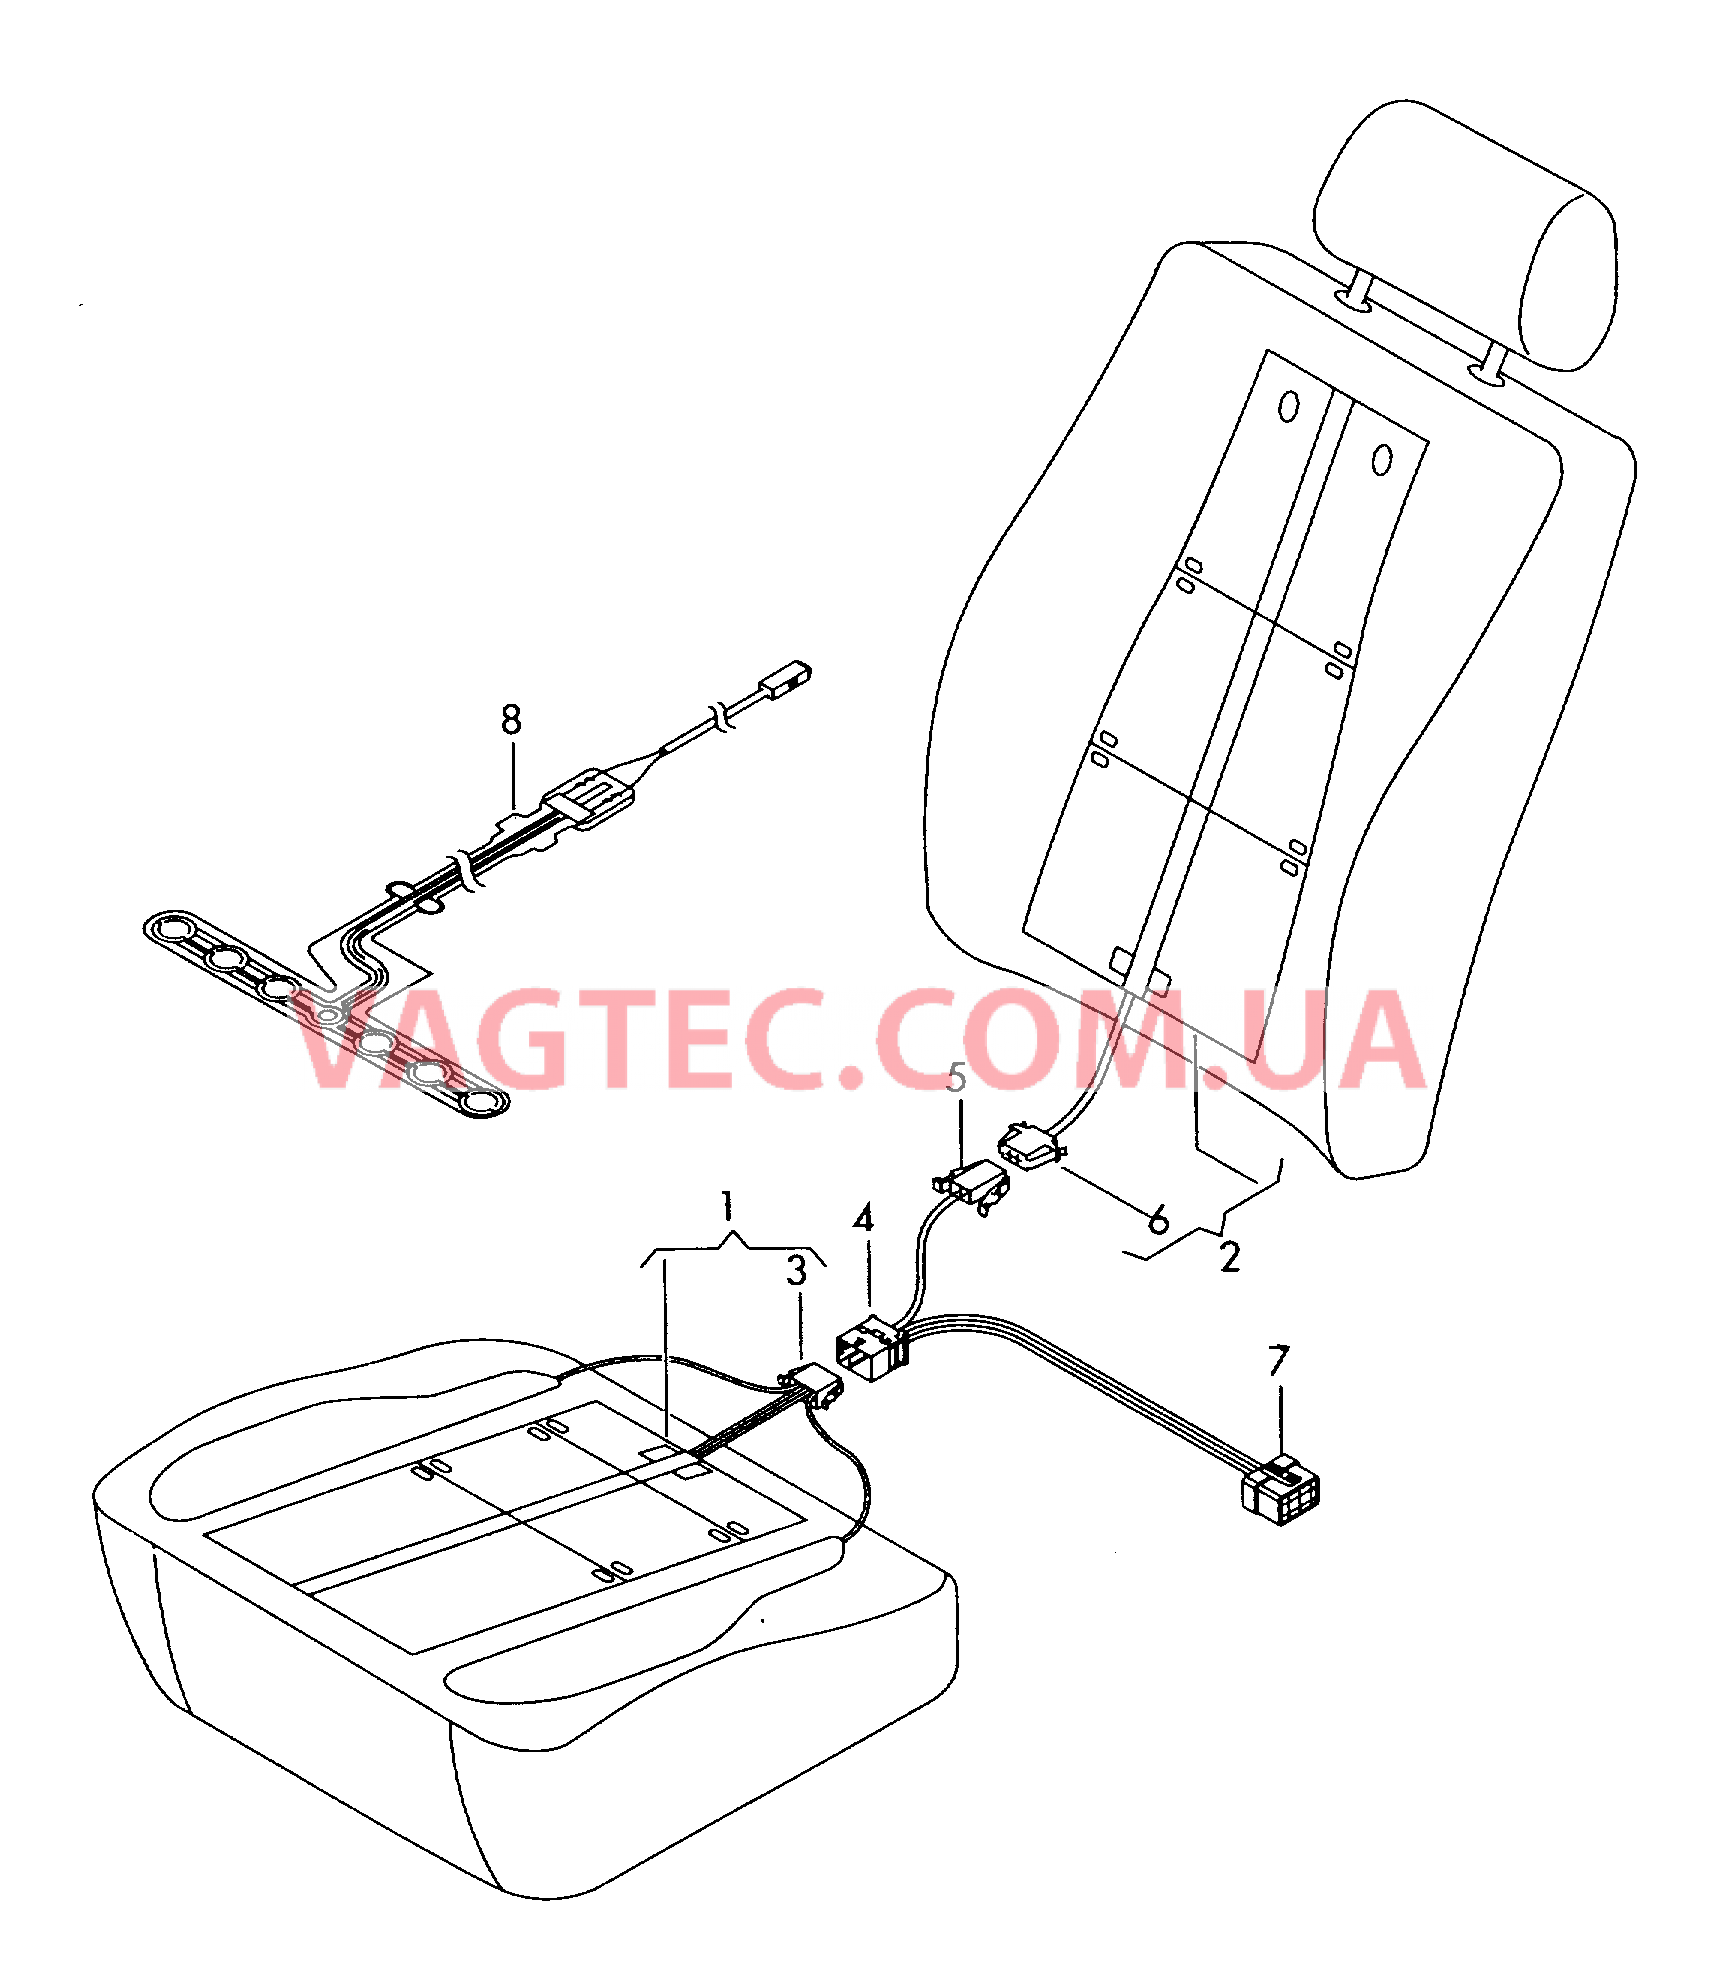 Нагревательный элемент спинки и подушки сиденья  Вставка распознавания занятости сиденья  для а/м с 3 поперечными швами на поверхности сиденья F 8Р-7-223 451>>* для AUDI A3 2005